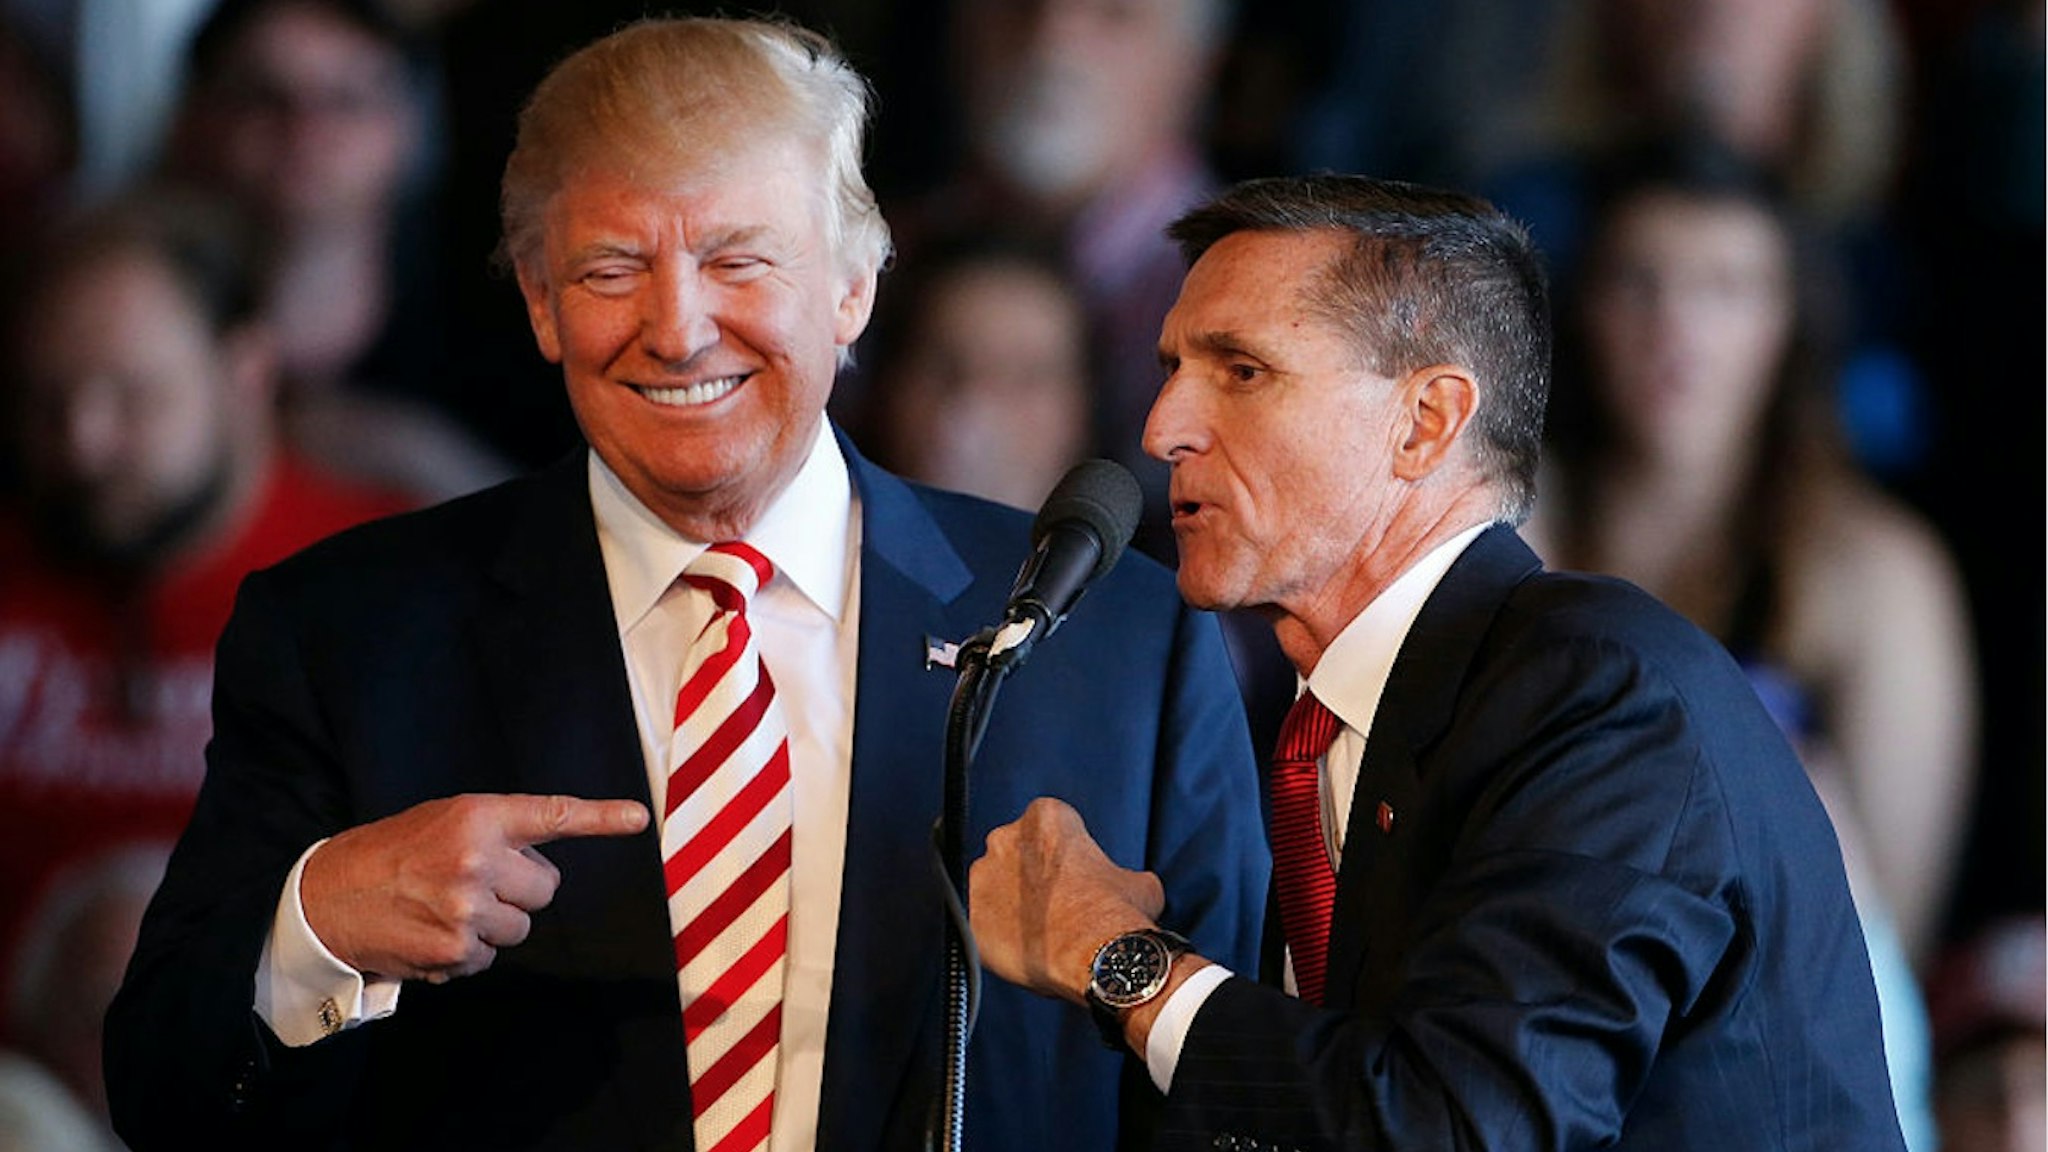 Flynn/Trump